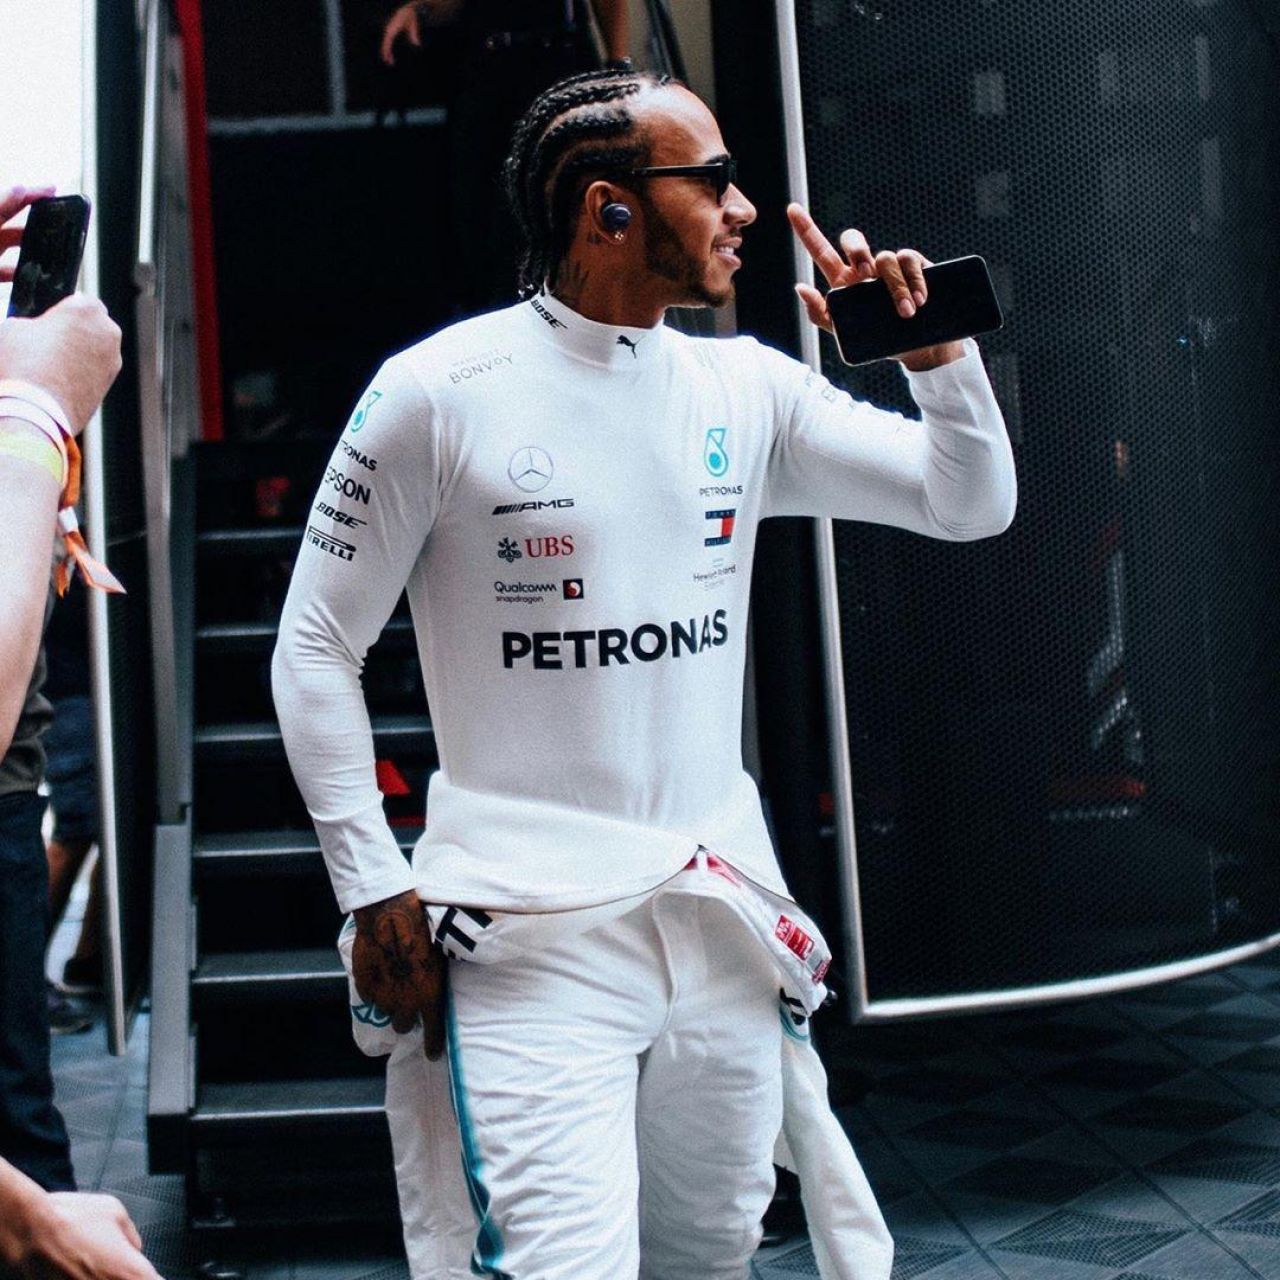 Le top ignifuge de Lewis Hamilton sur son compte Instagram.